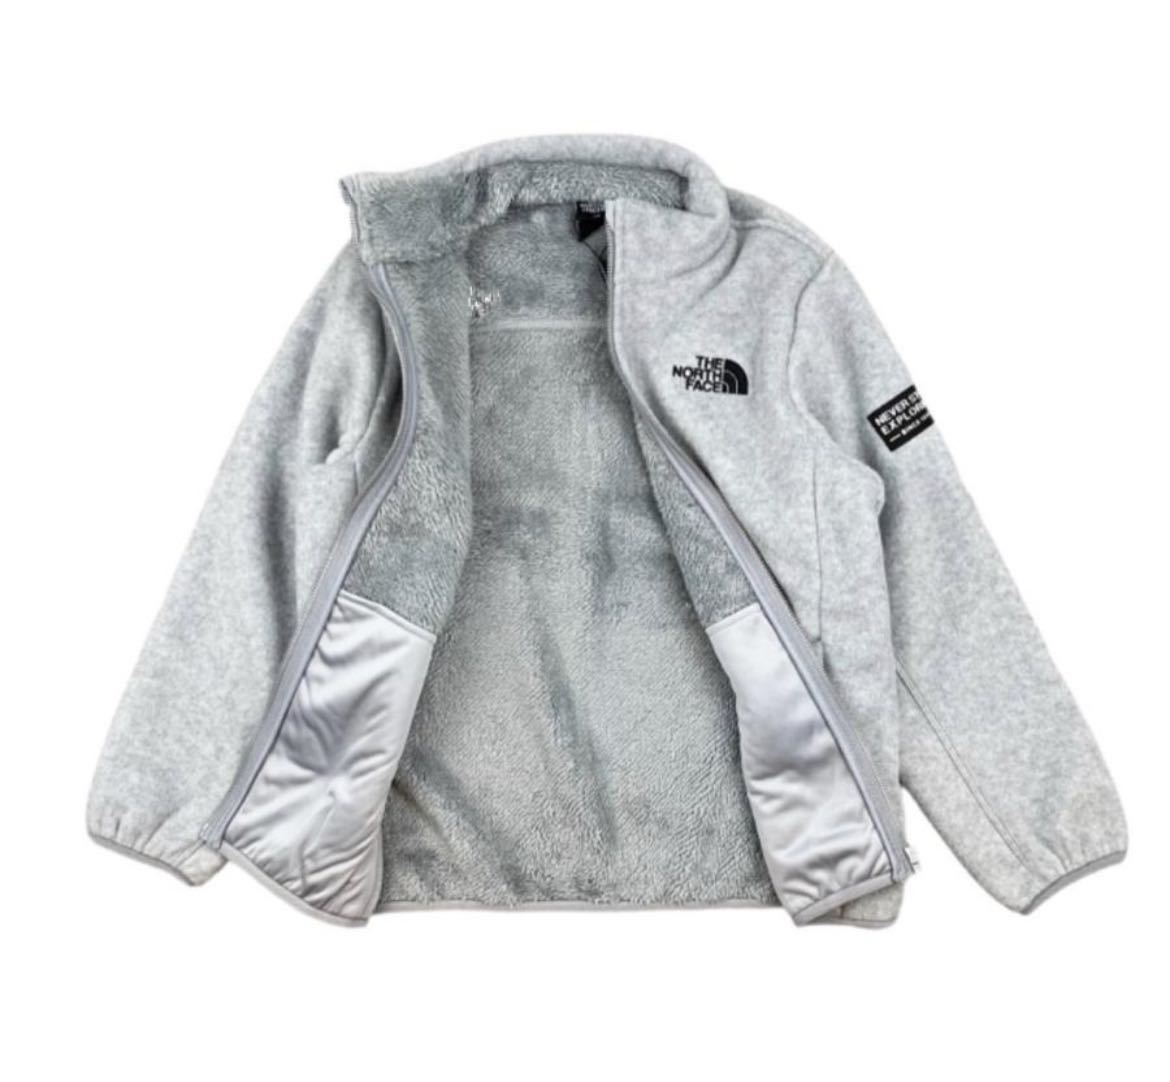  The North Face fleece jacket boa Korea Kids 140.THE NORTH FACE jacket fleece fleece jacket new goods 